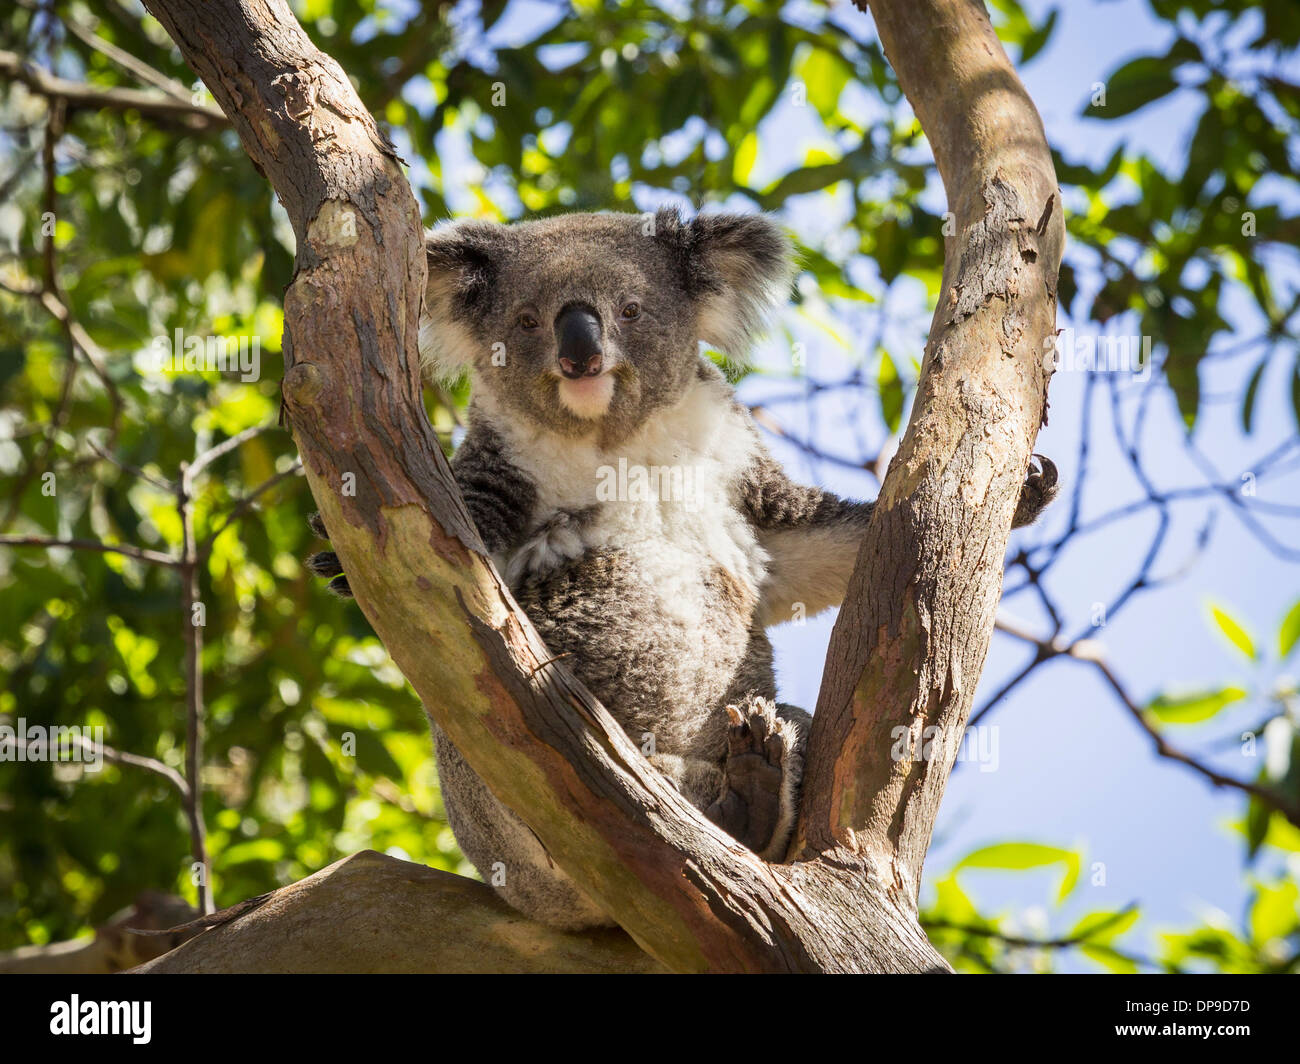 Koala bear sitting in a tree in Australia Stock Photo